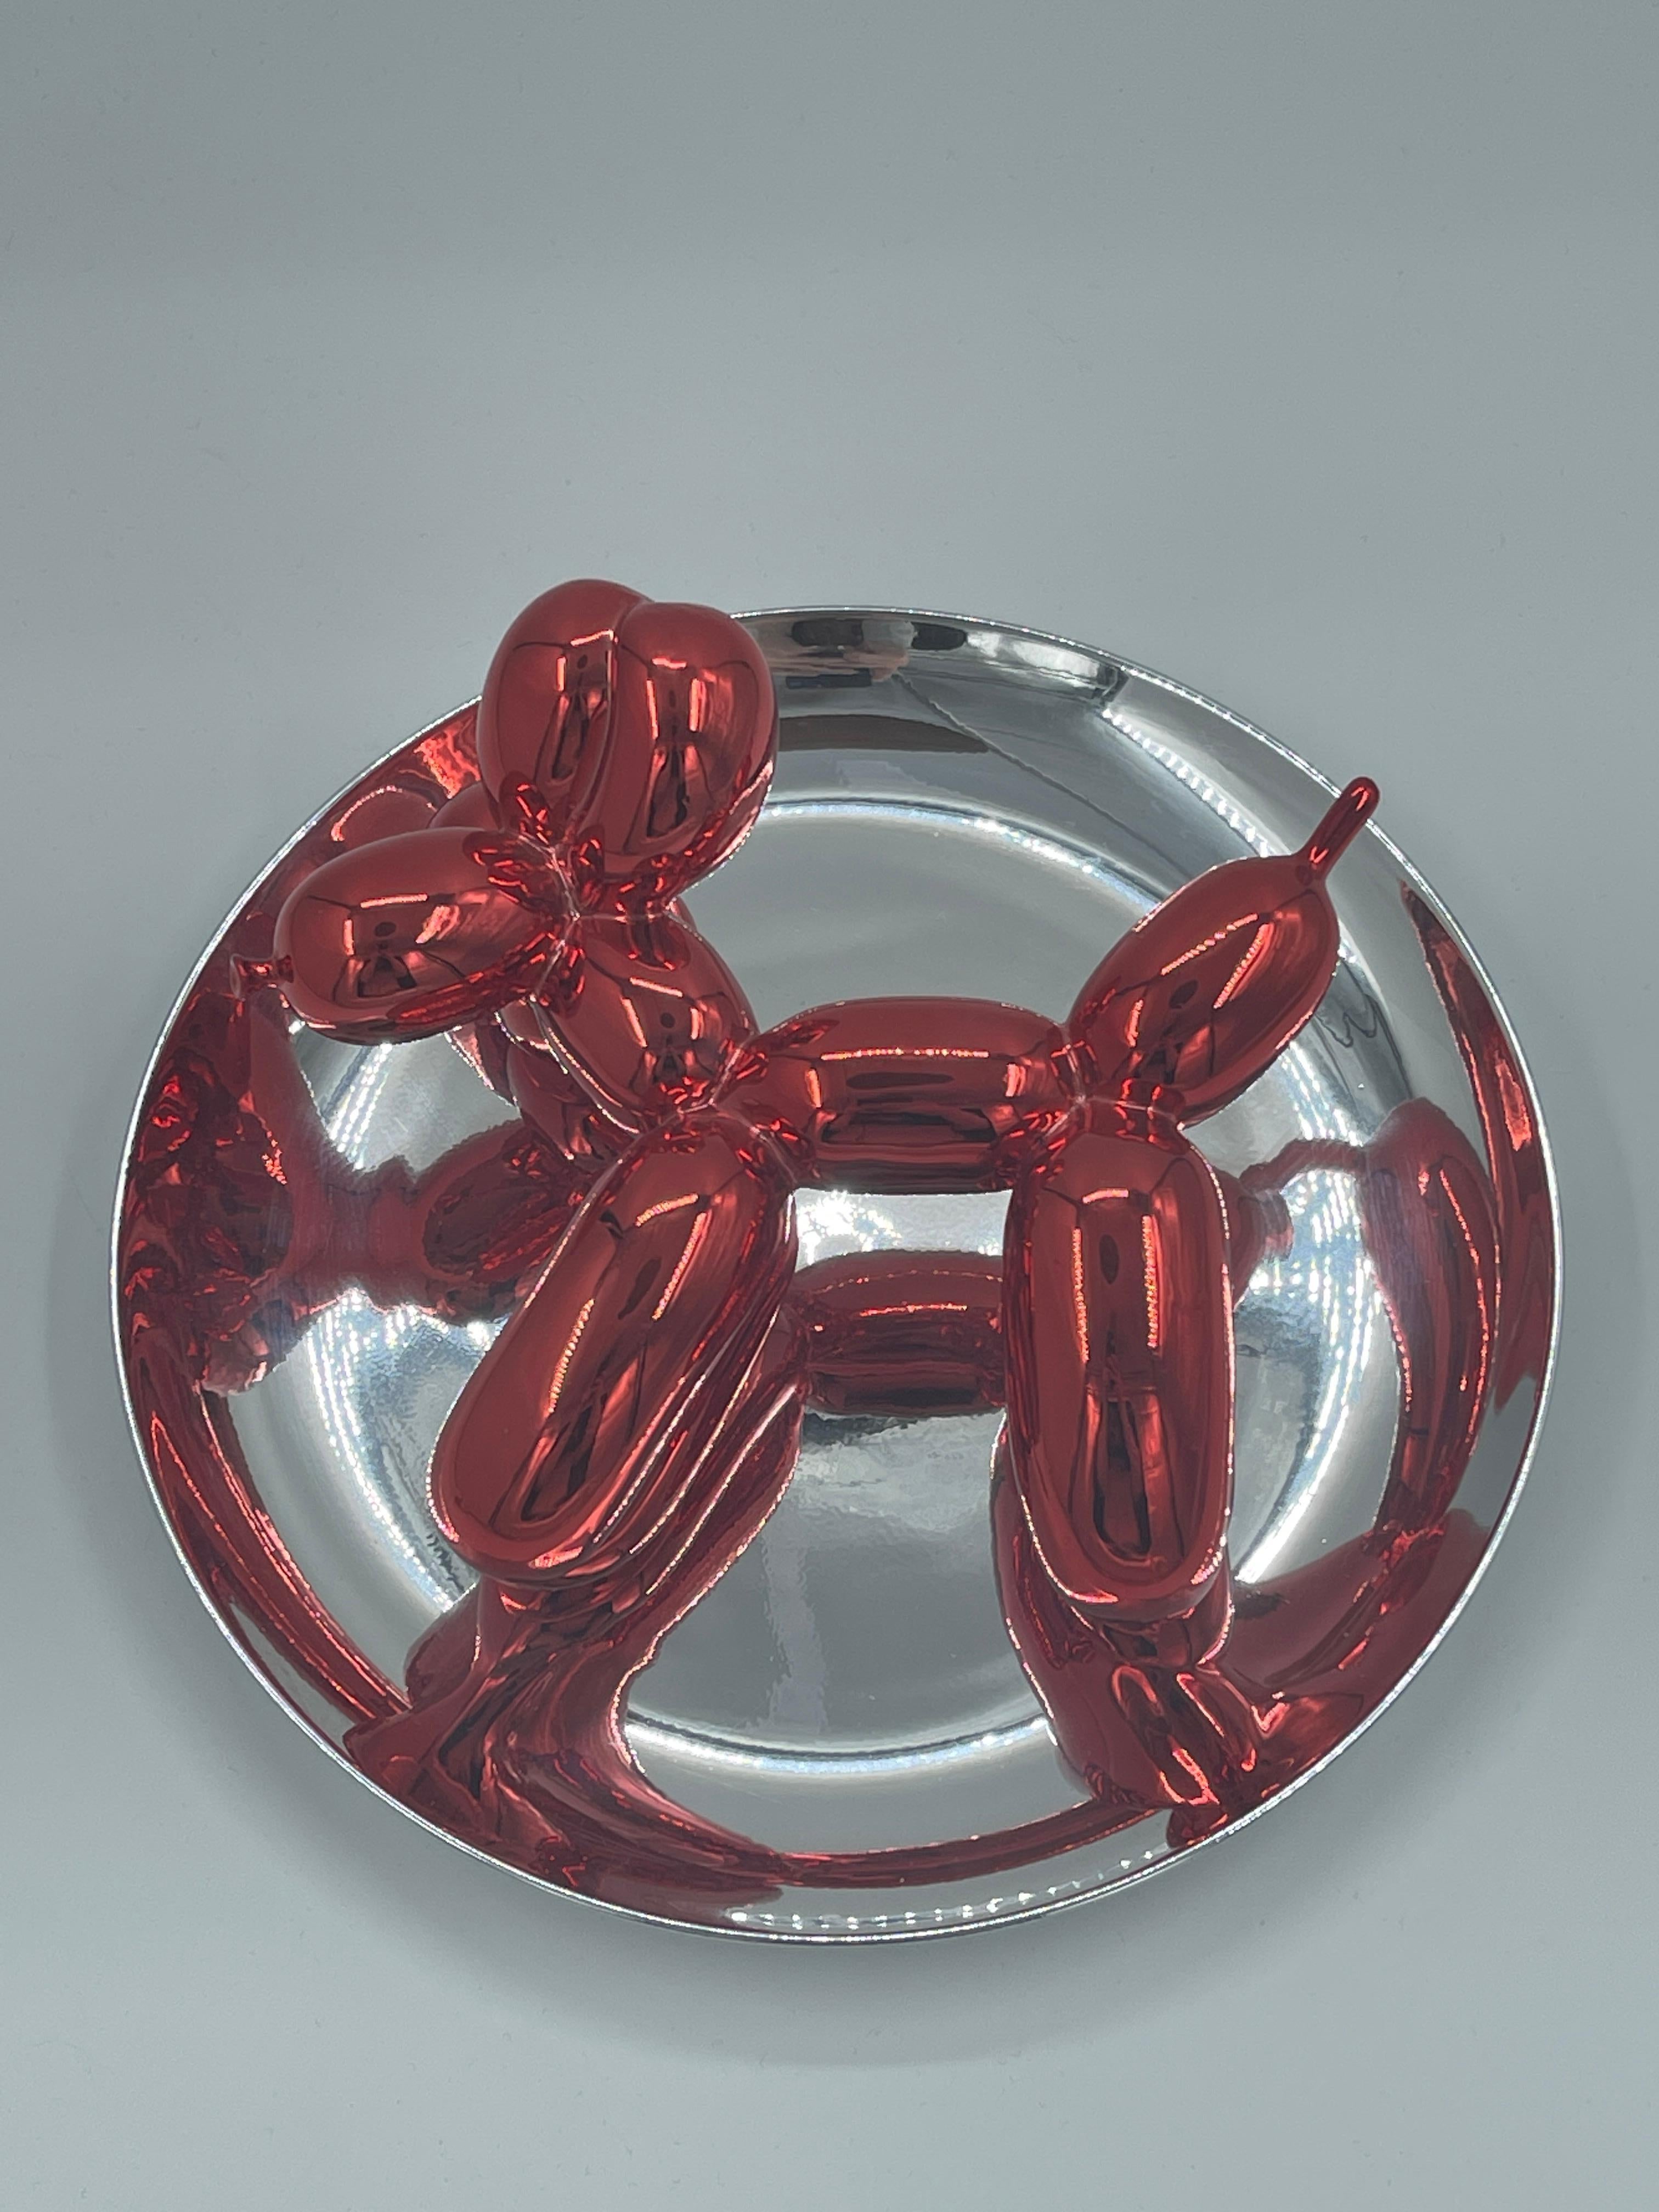 Plato de porcelana metálica en rojo y plata, fabricado en 1995, numerado 723/2300 en la etiqueta situada debajo del plato. Publicado por el Museo de Arte Contemporáneo de Los Ángeles, con caja original y sin el soporte de plástico. 